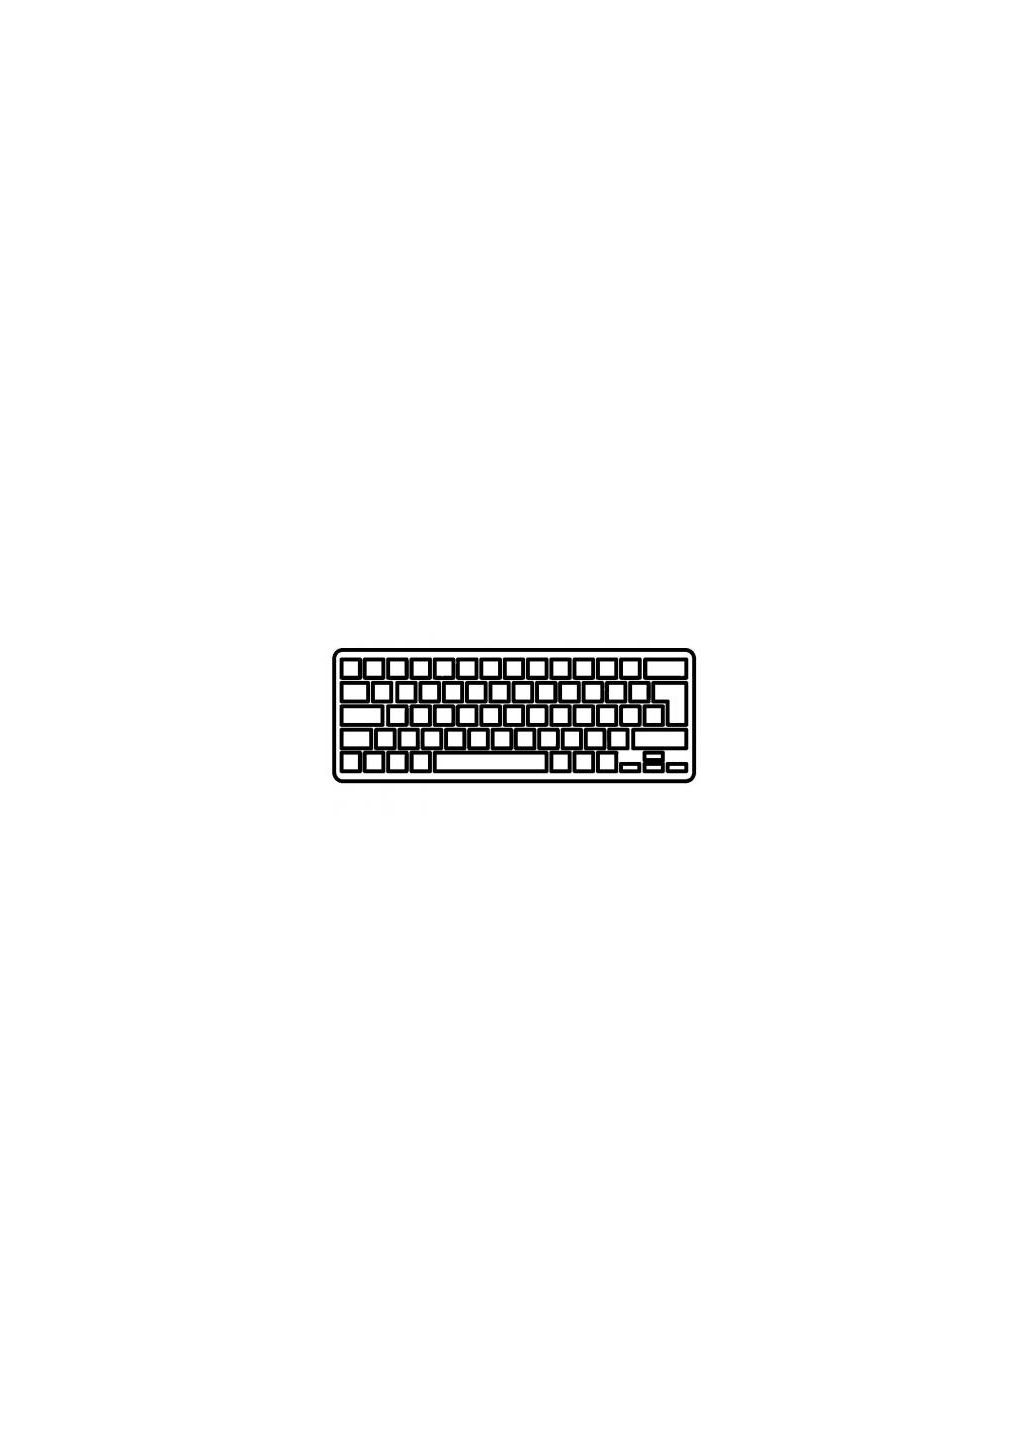 Клавиатура ноутбука U (A43146) HP nc6200/nc6220/nc6230/nc8200/nc8220/nc8230 черная r (276707607)